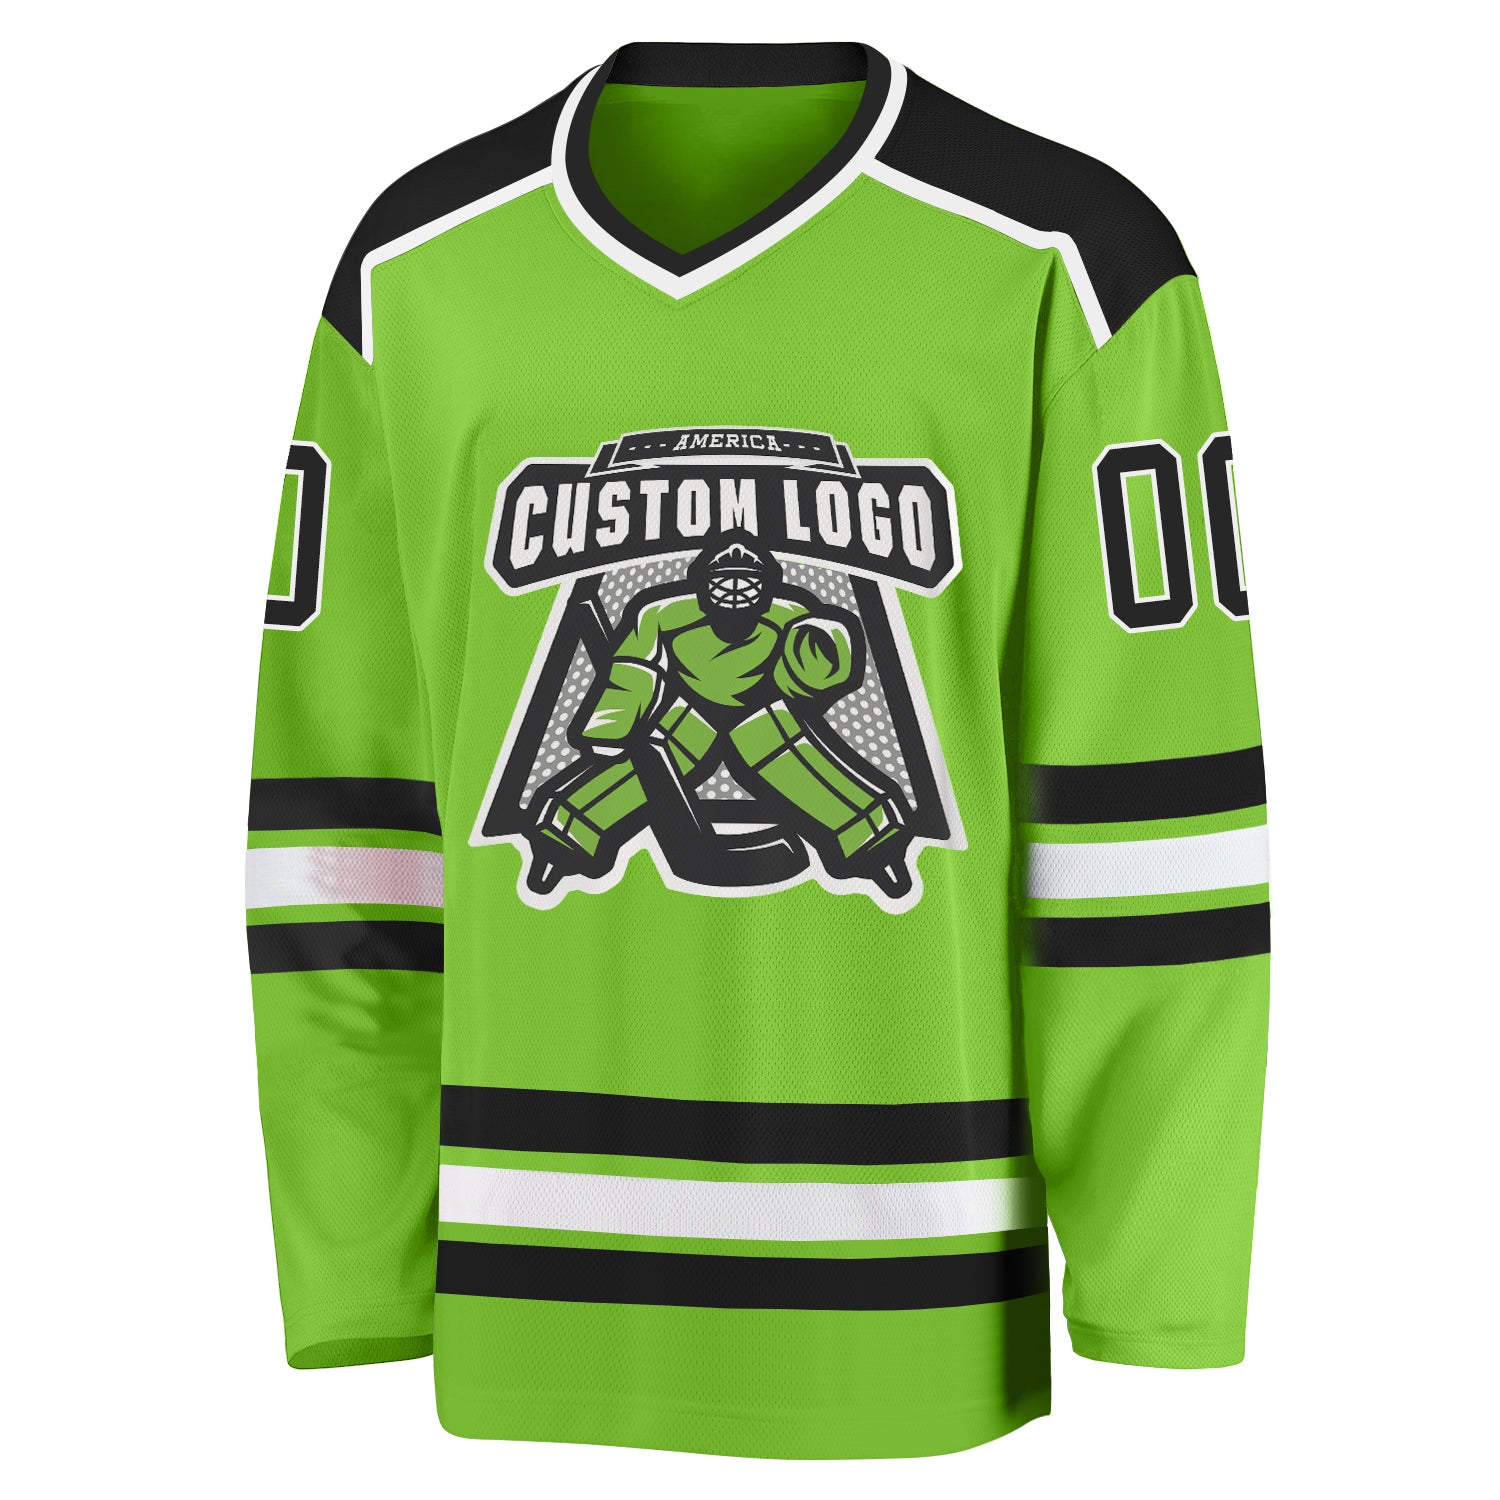 Custom Hockey New Arrivals Hockey Jerseys, Hockey Uniforms For